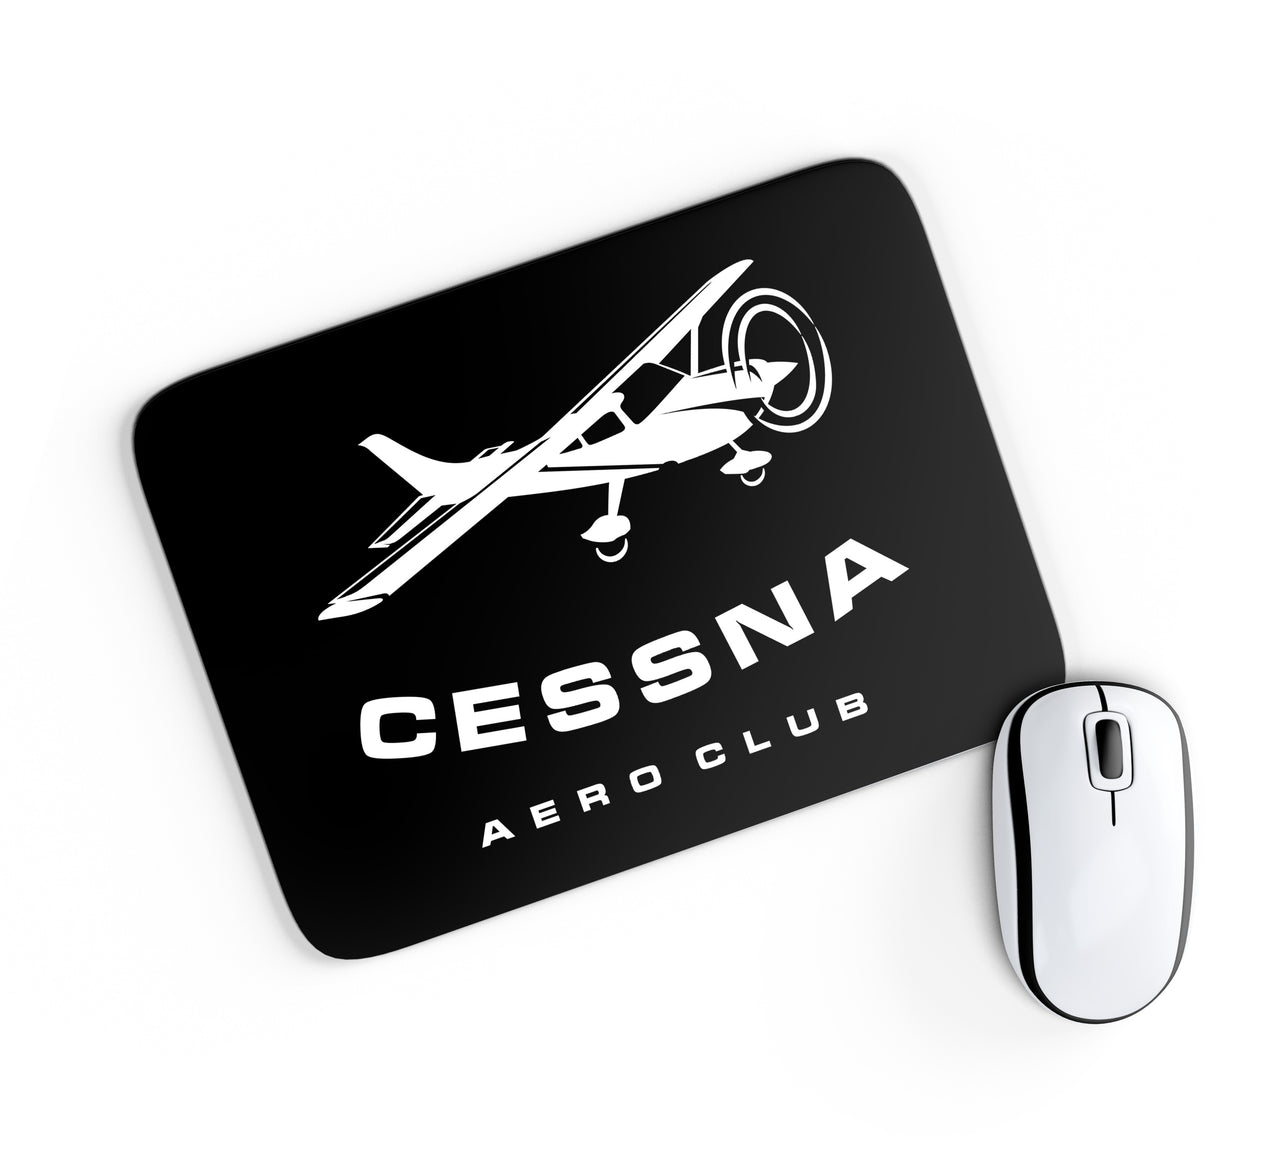 Cessna Aeroclub Designed Mouse Pads